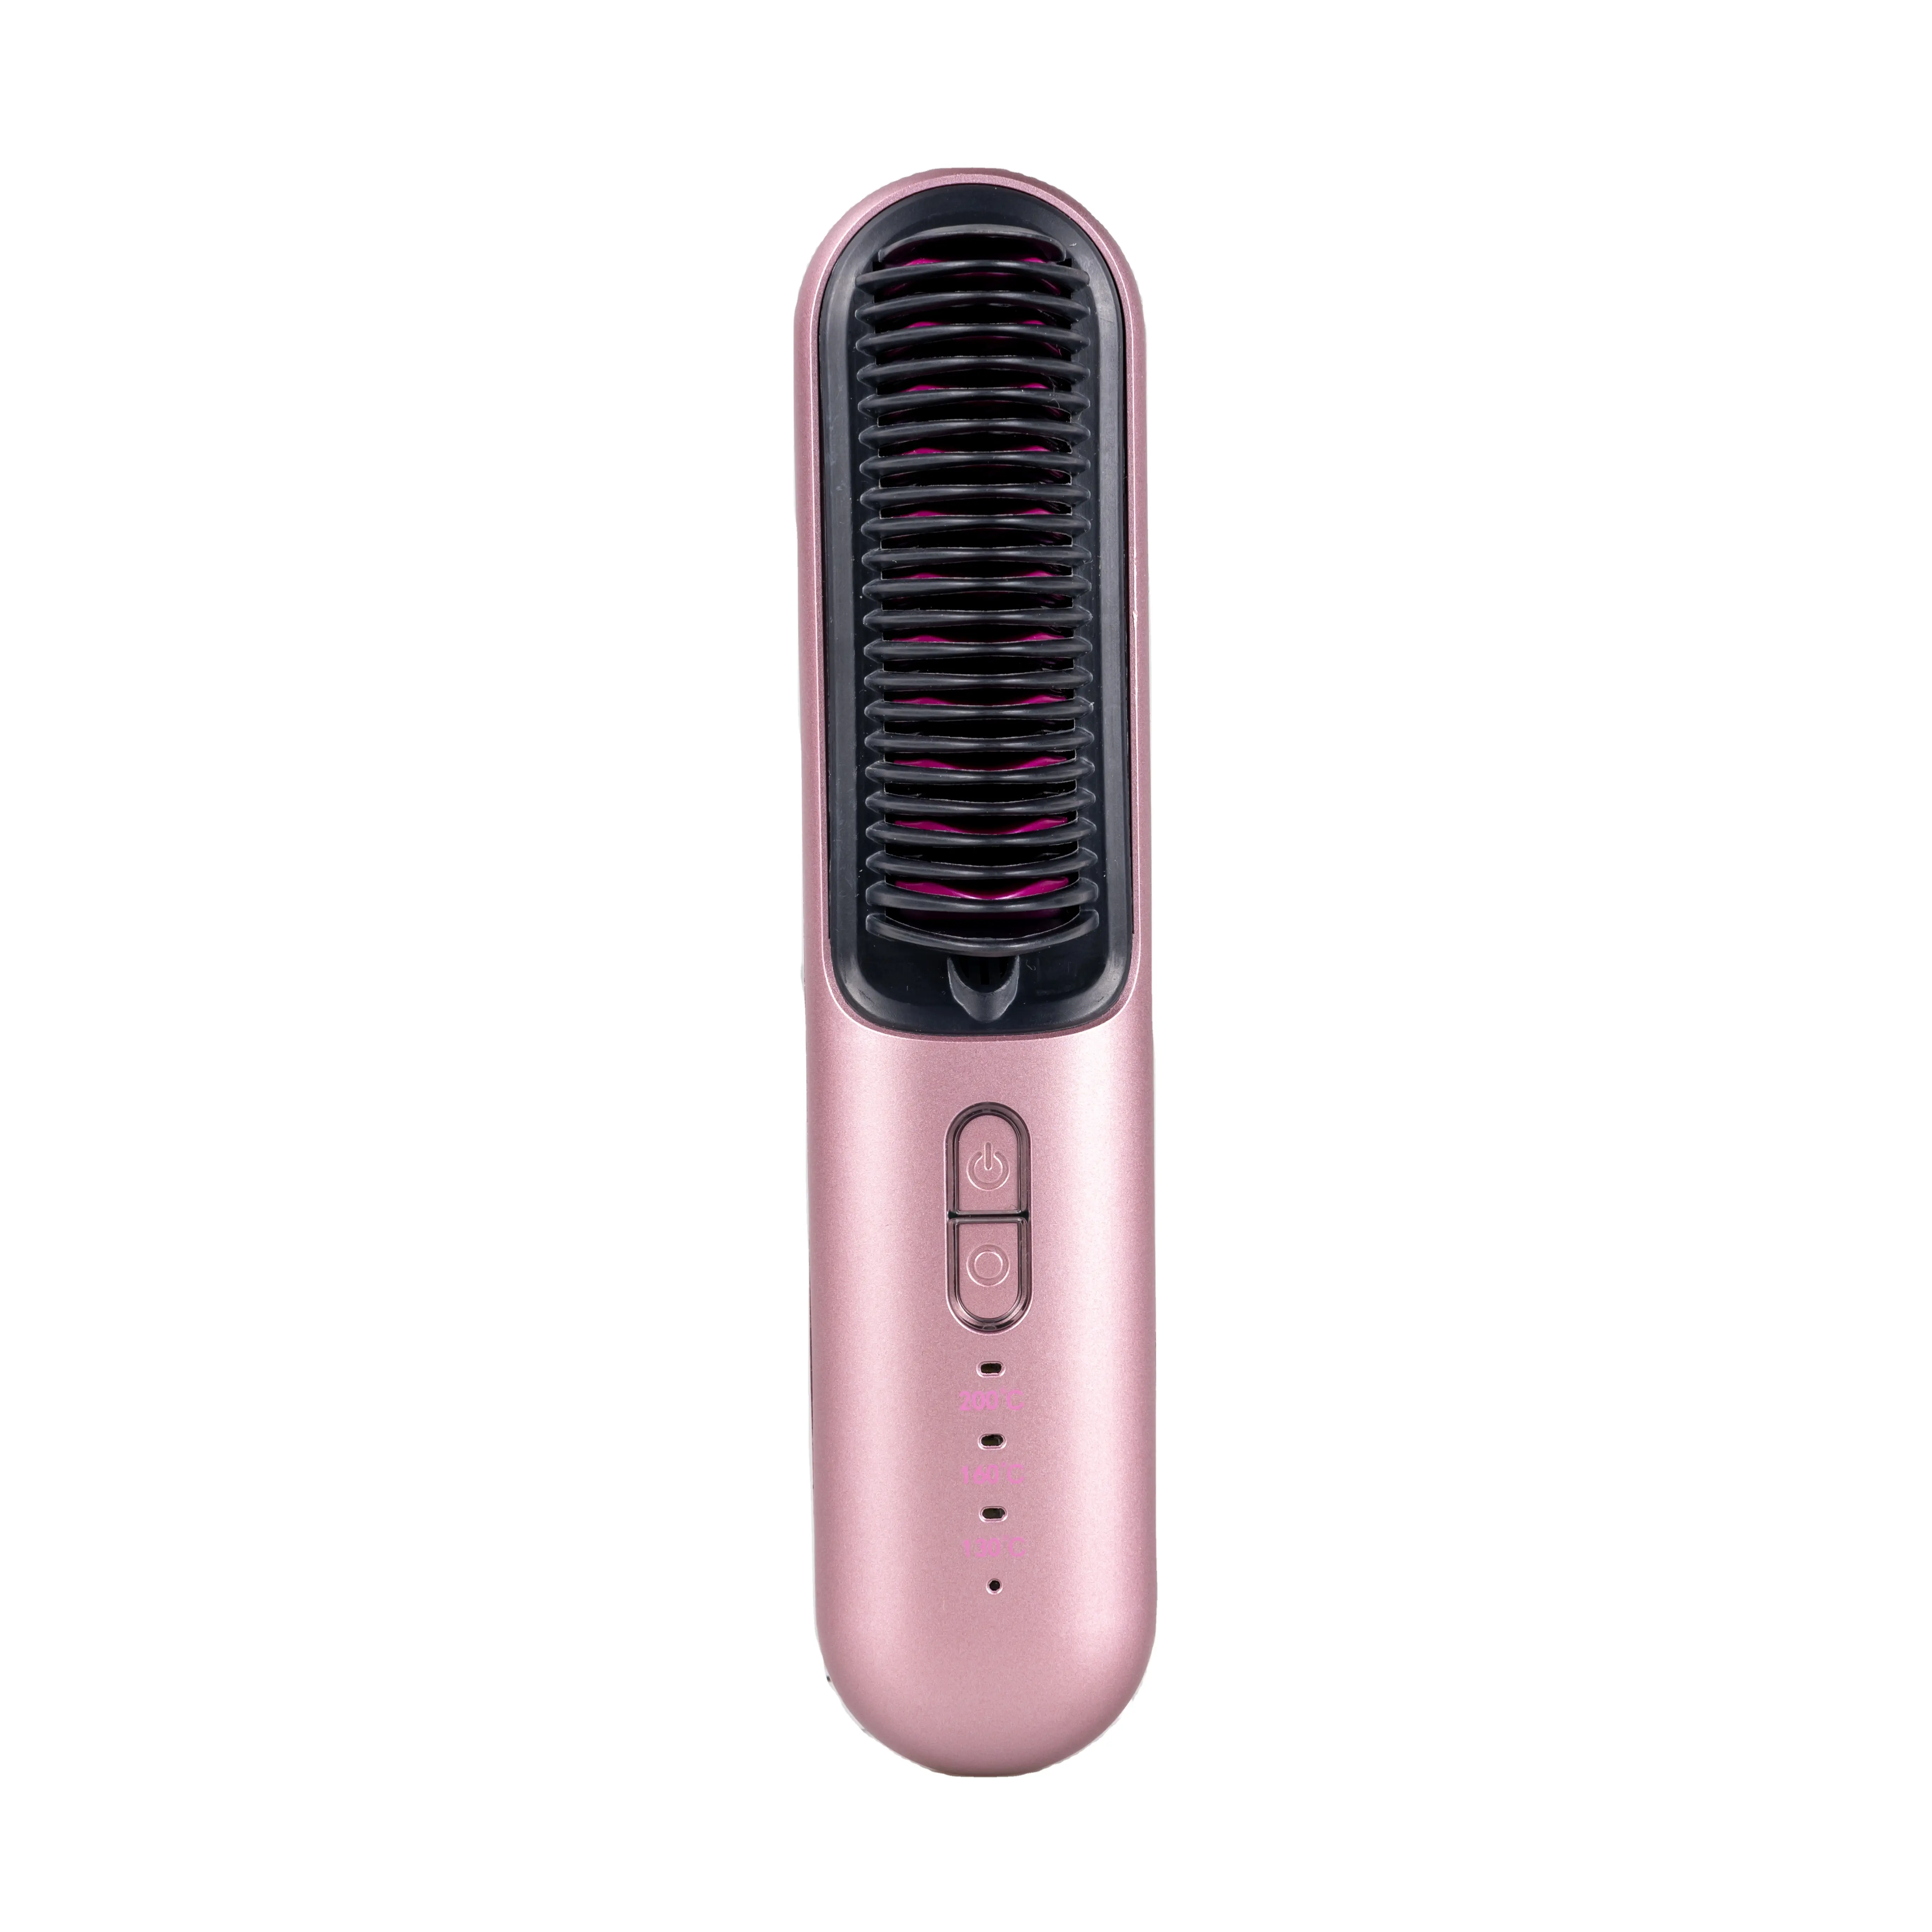 Anion Straightener 2500mAH Battery Straightening Hair Brush Portable Ceramic Wireless Straightener Hot Comb